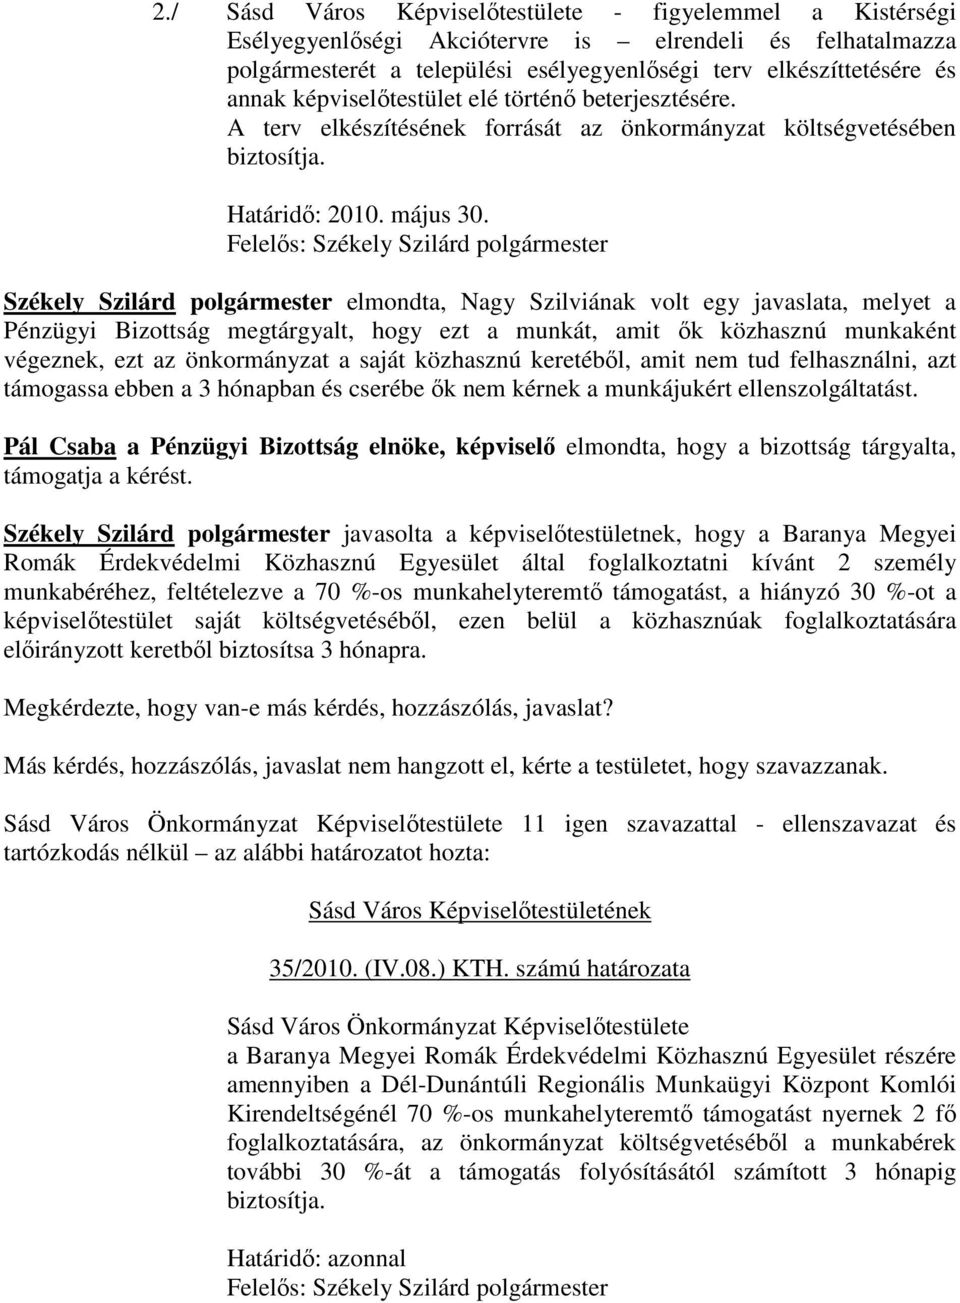 Felelős: Székely Szilárd polgármester Székely Szilárd polgármester elmondta, Nagy Szilviának volt egy javaslata, melyet a Pénzügyi Bizottság megtárgyalt, hogy ezt a munkát, amit ők közhasznú